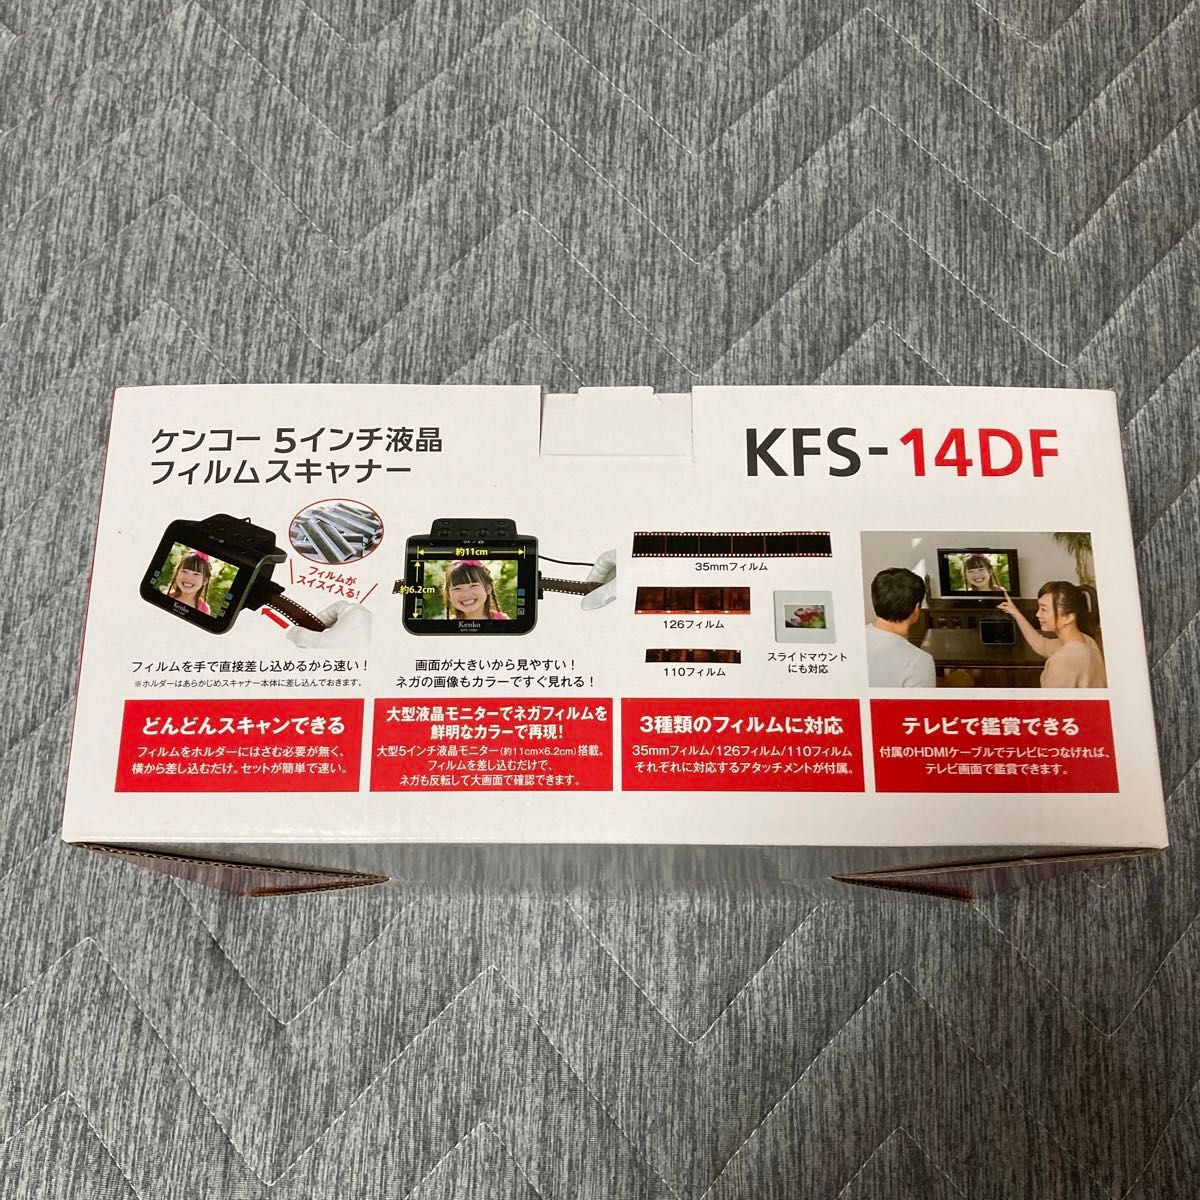 【中古品】ケンコー／5インチ液晶フィルムスキャナー KFS-14DF